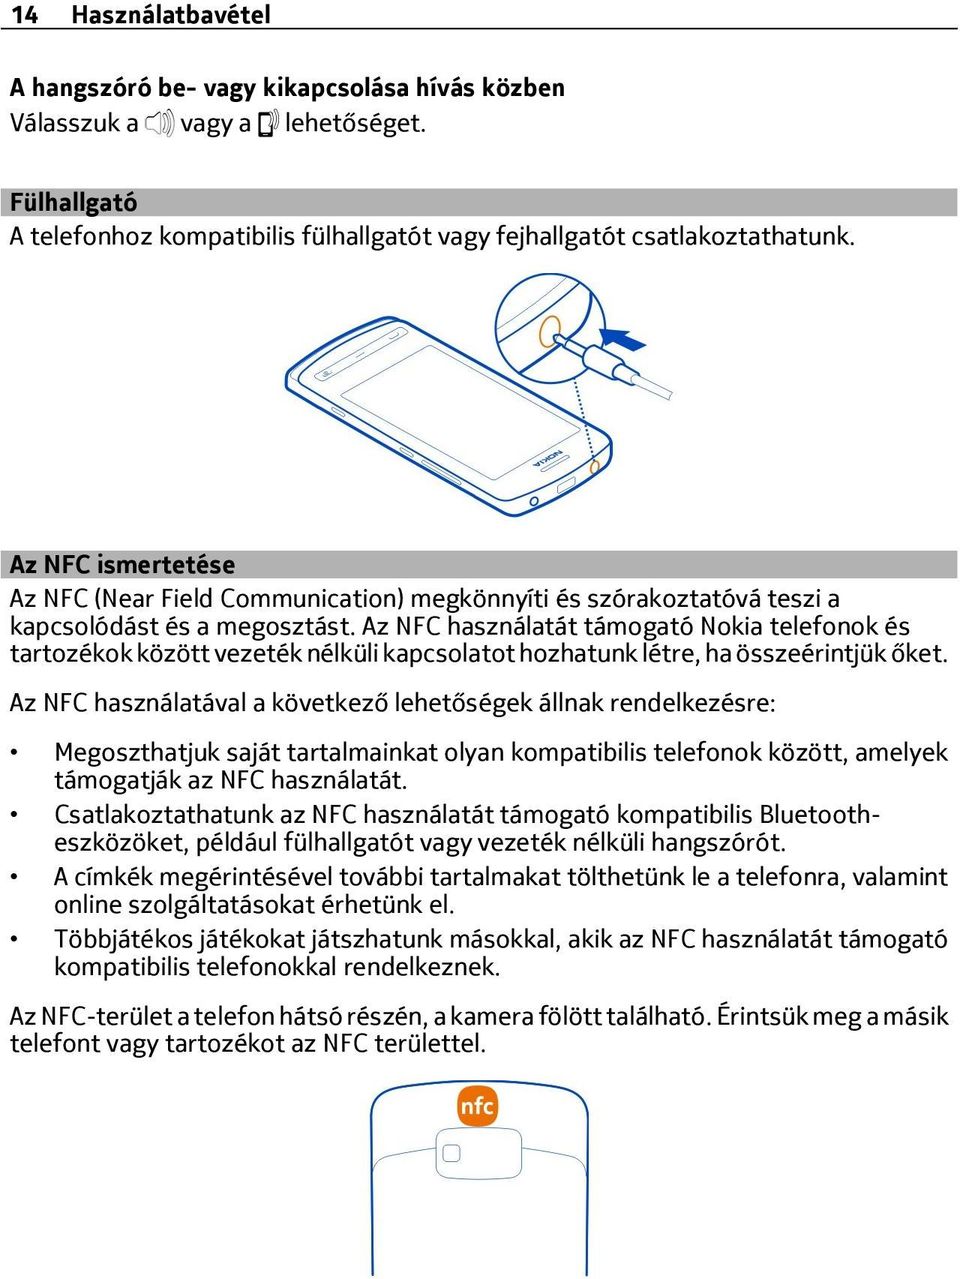 Az NFC használatát támogató Nokia telefonok és tartozékok között vezeték nélküli kapcsolatot hozhatunk létre, ha összeérintjük őket.